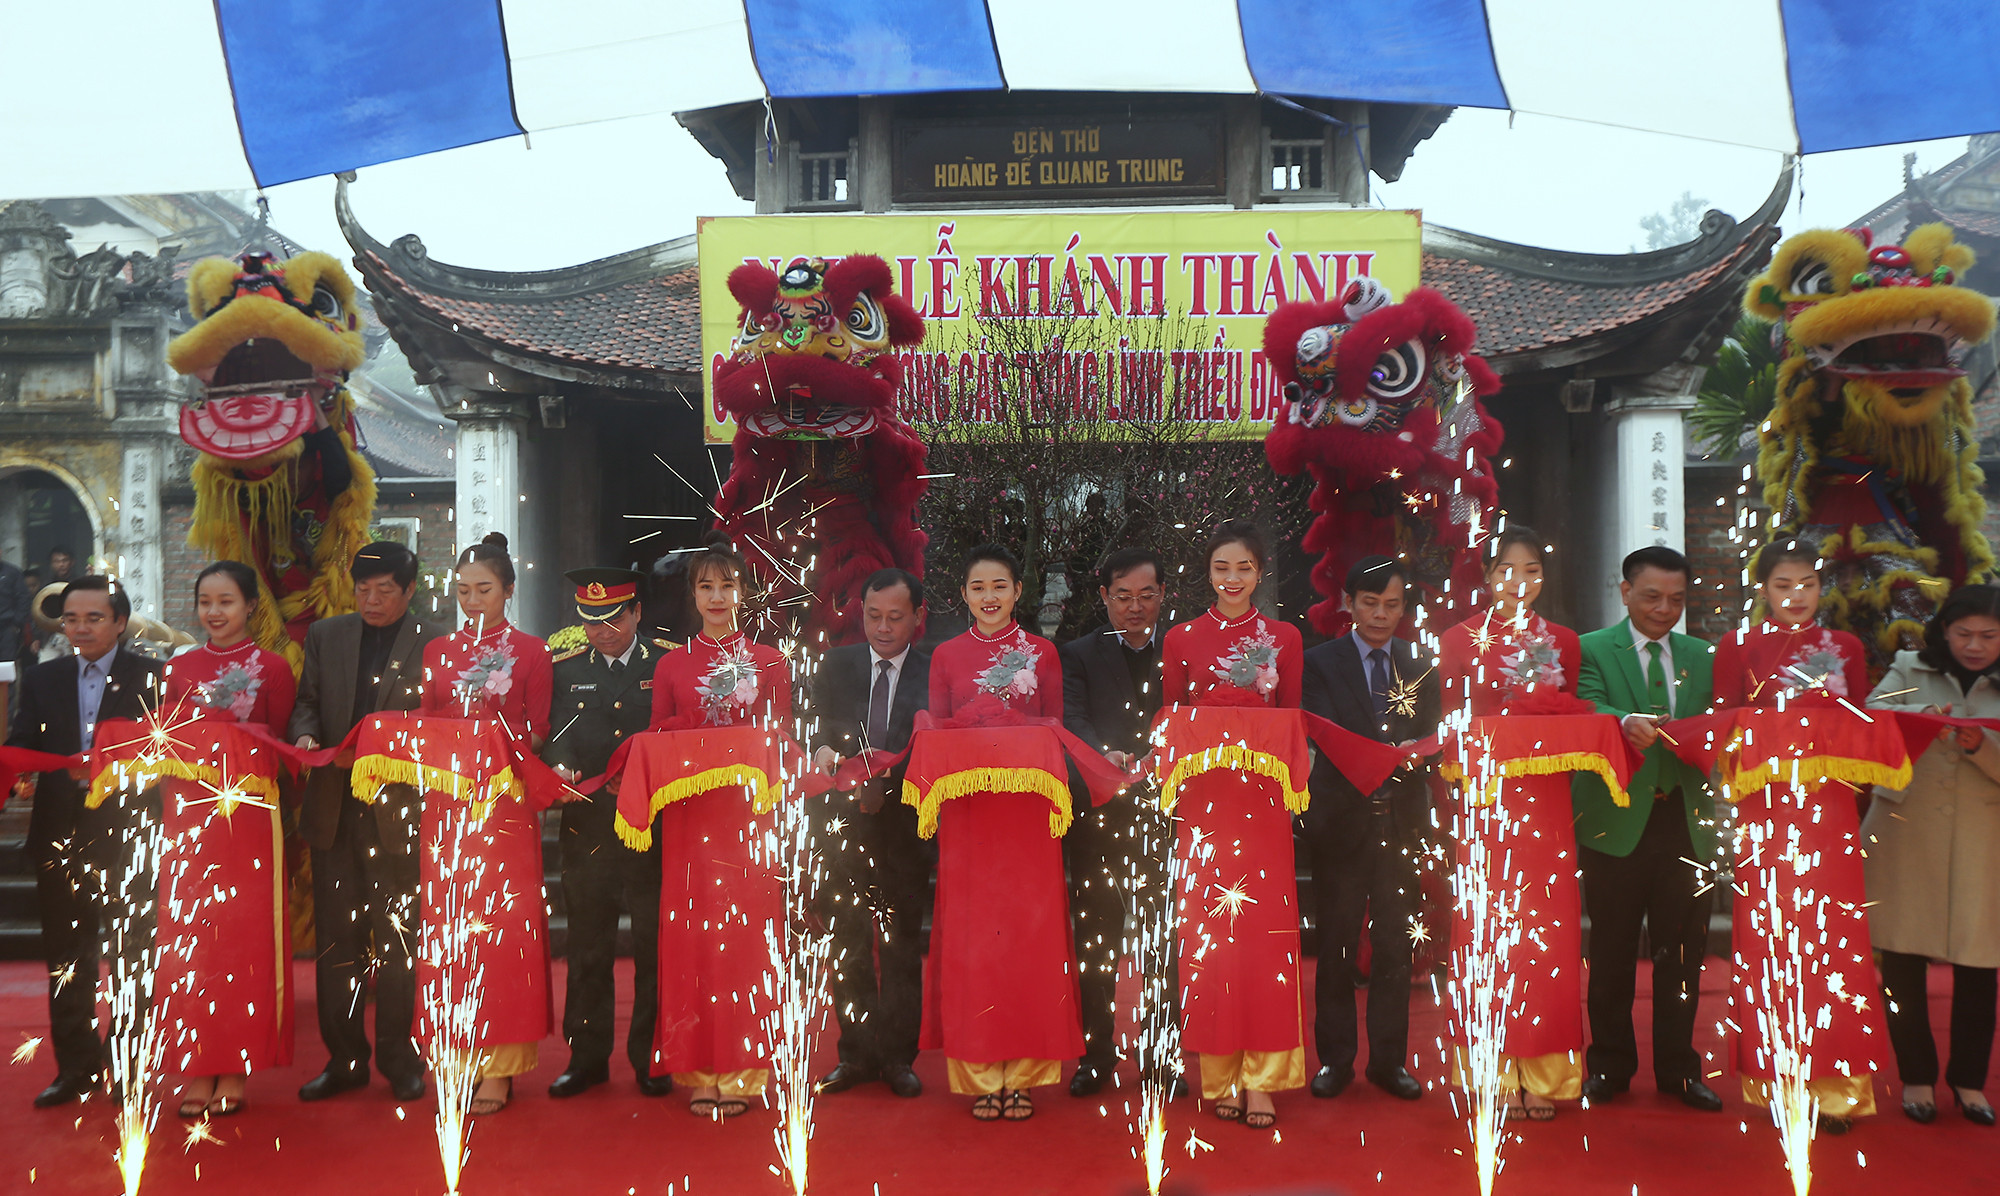 Các đại biểu cắt băng khánh thành tượng các tướng lĩnh triều Tây Sơn tại Đền thờ Hoàng đế Quang Trung. Ảnh: Trung Kiên